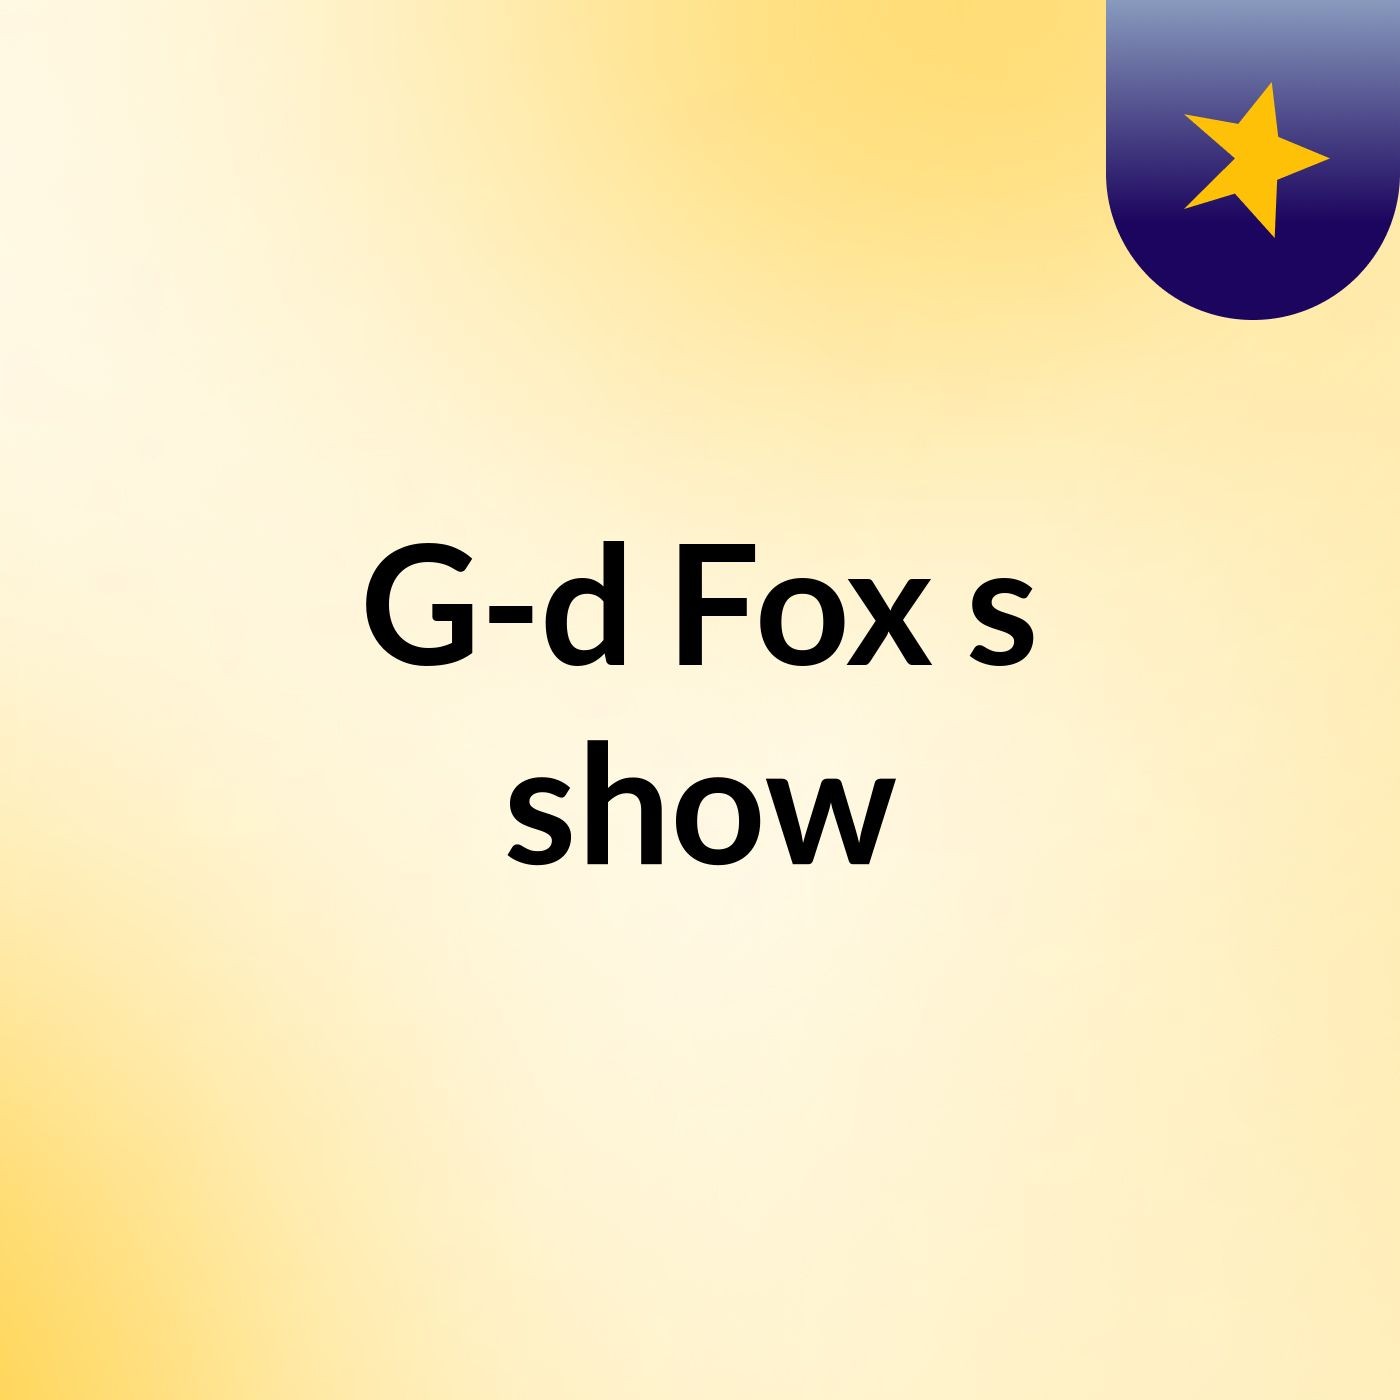 G-d Fox's show